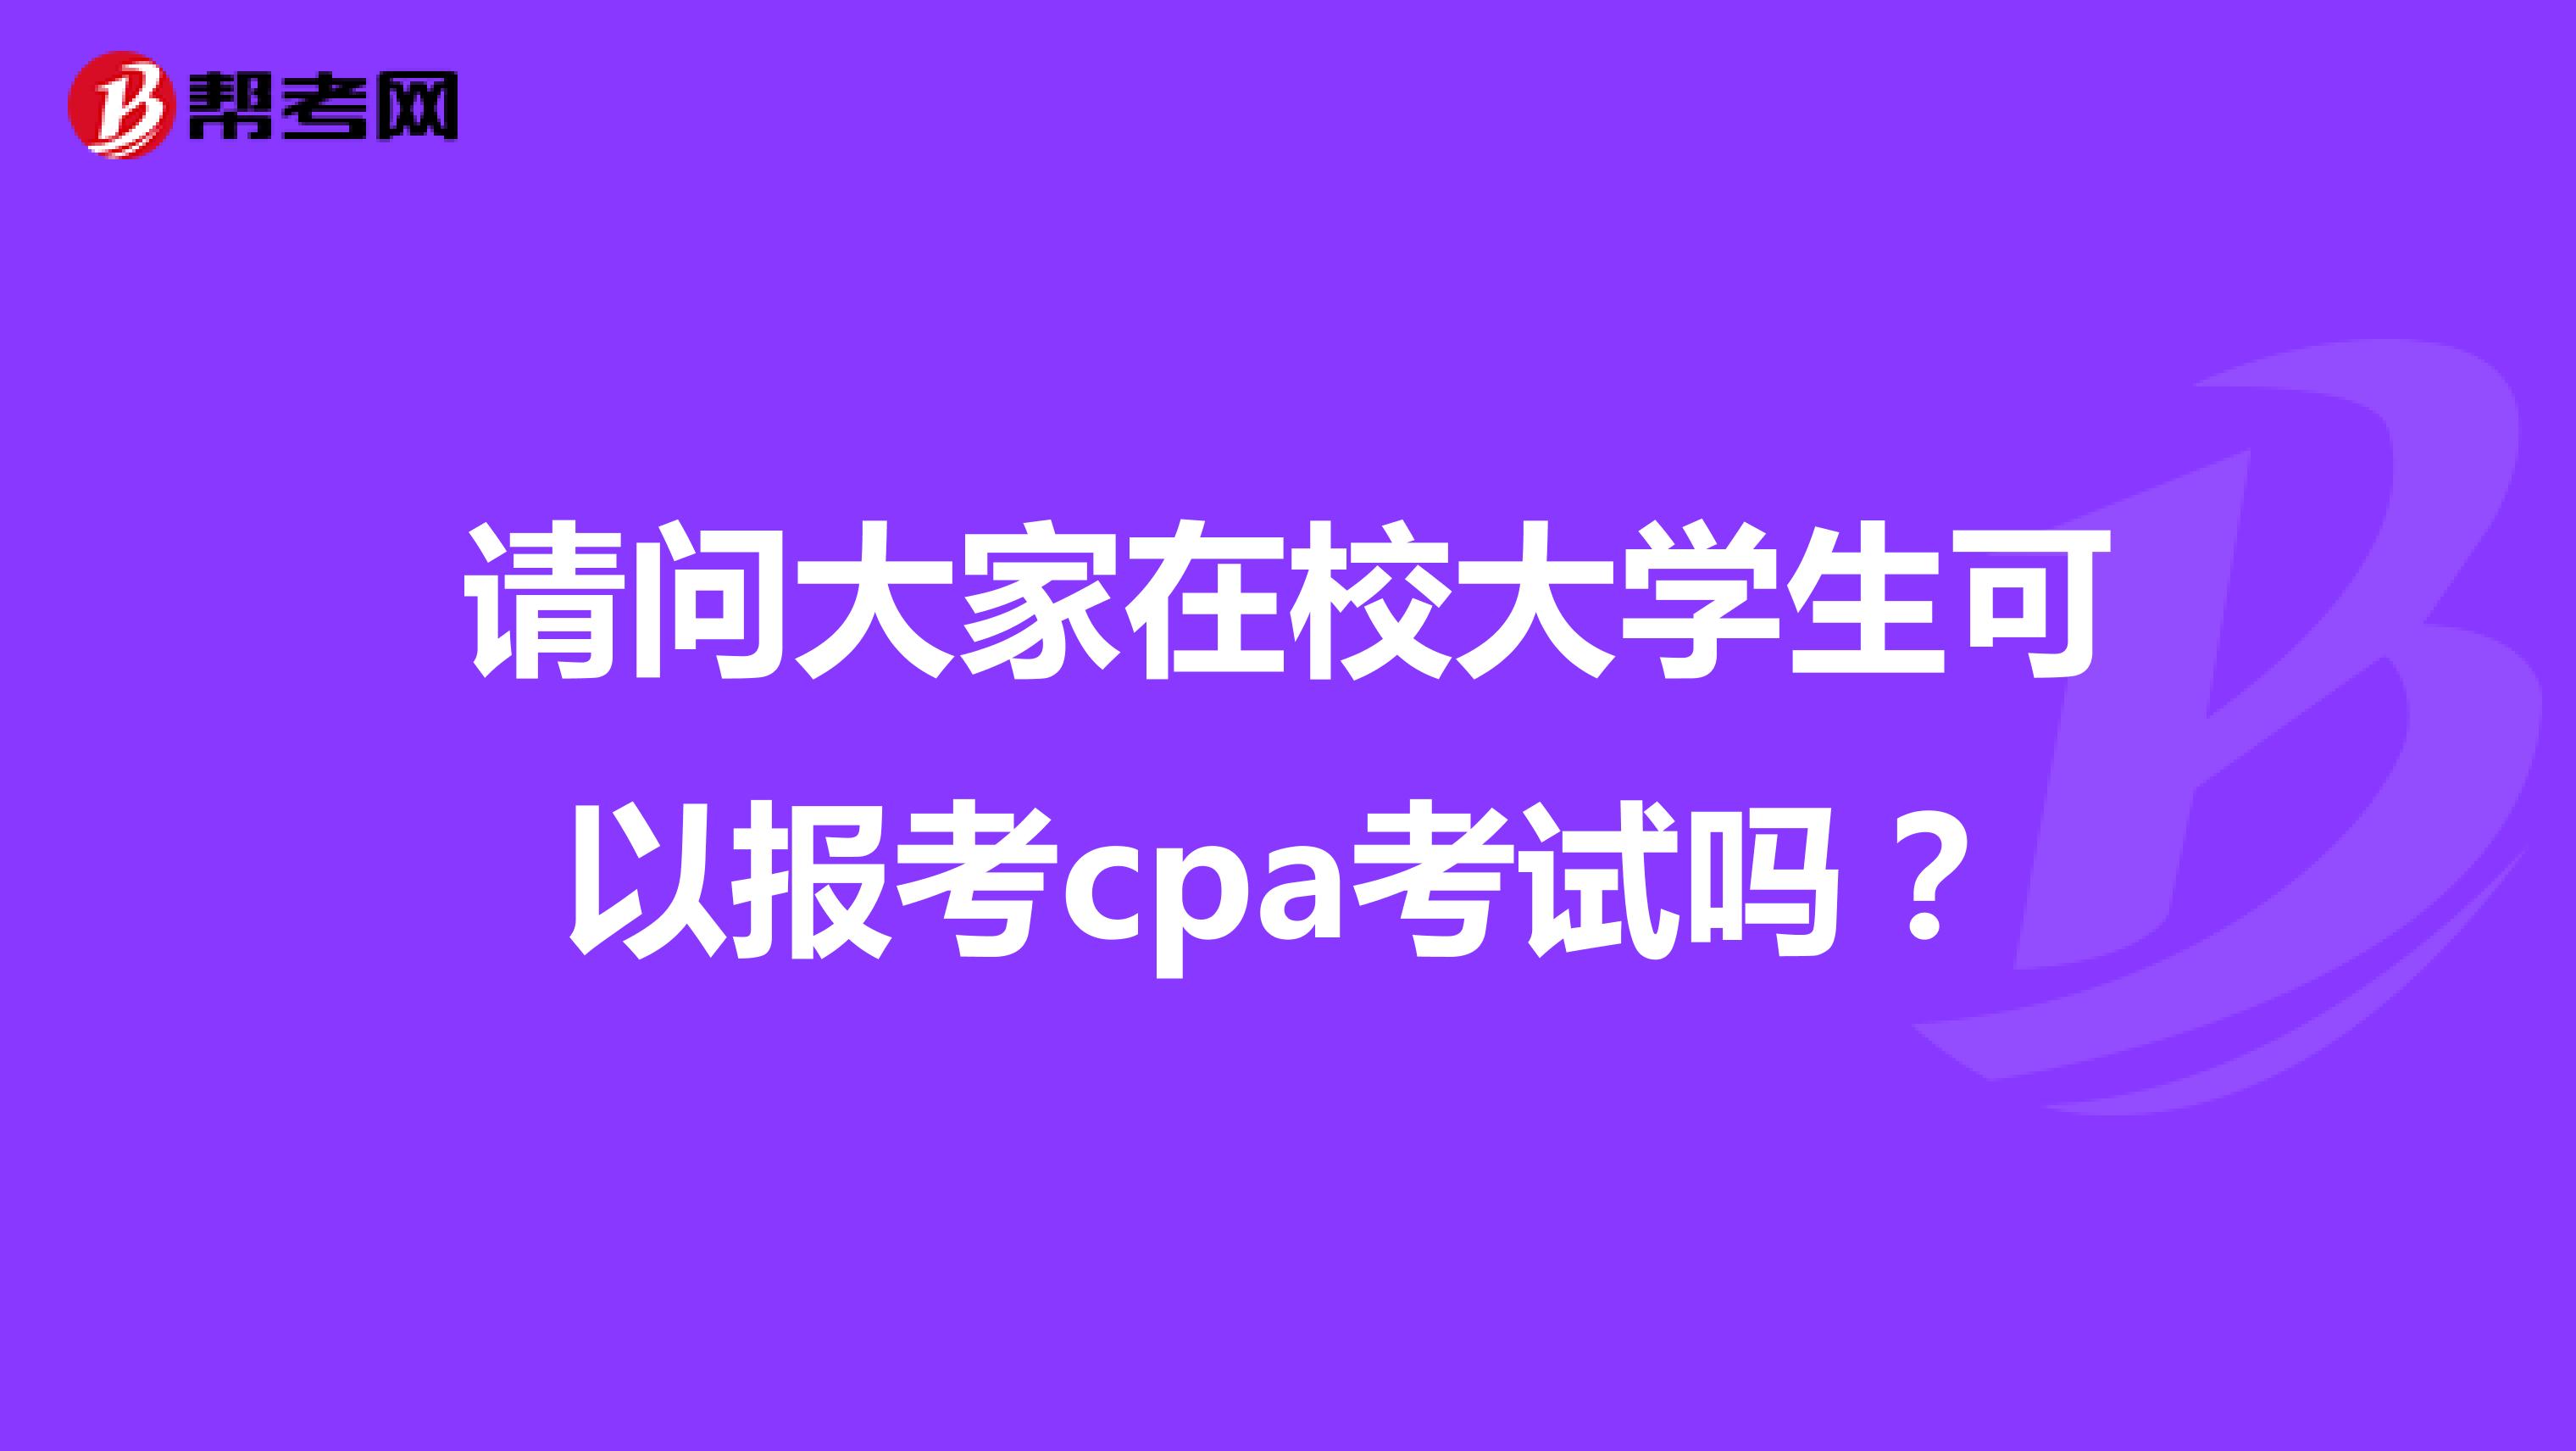 请问大家在校大学生可以报考cpa考试吗？